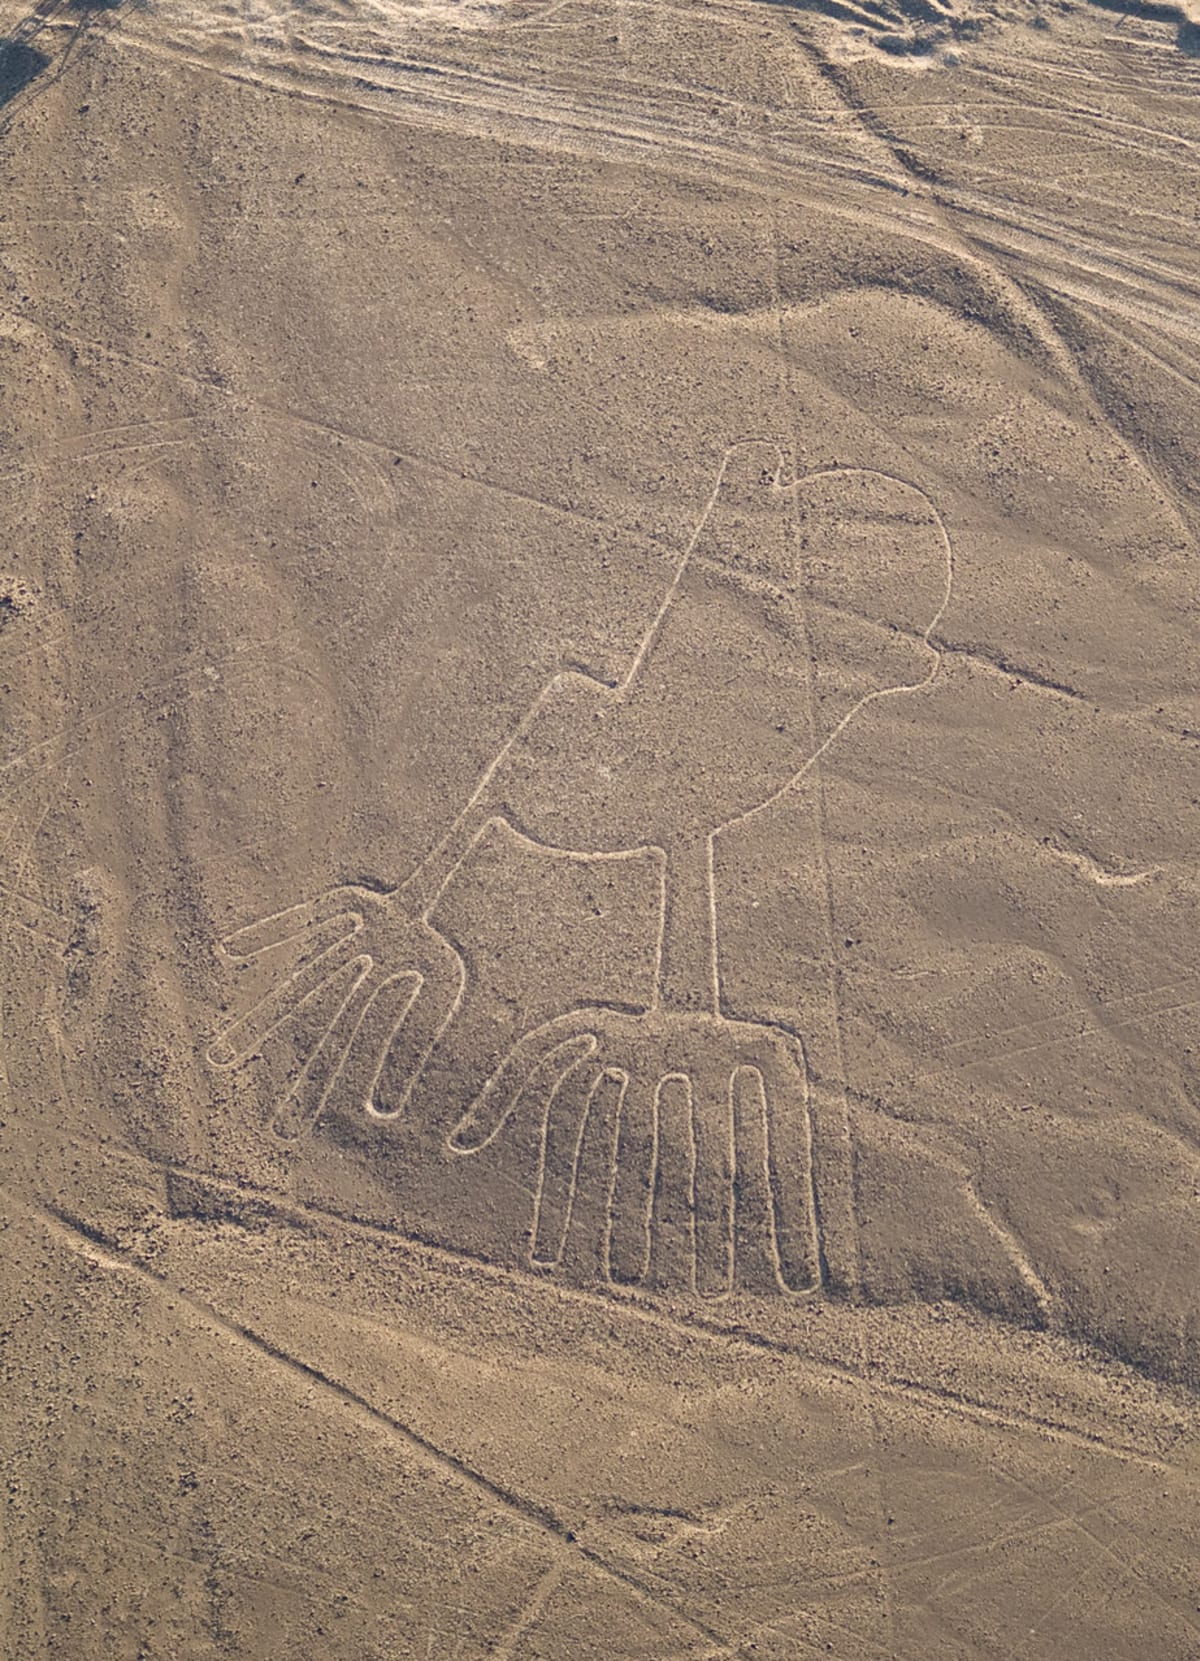 Obrazce na planině Nazca - Obrázek 4